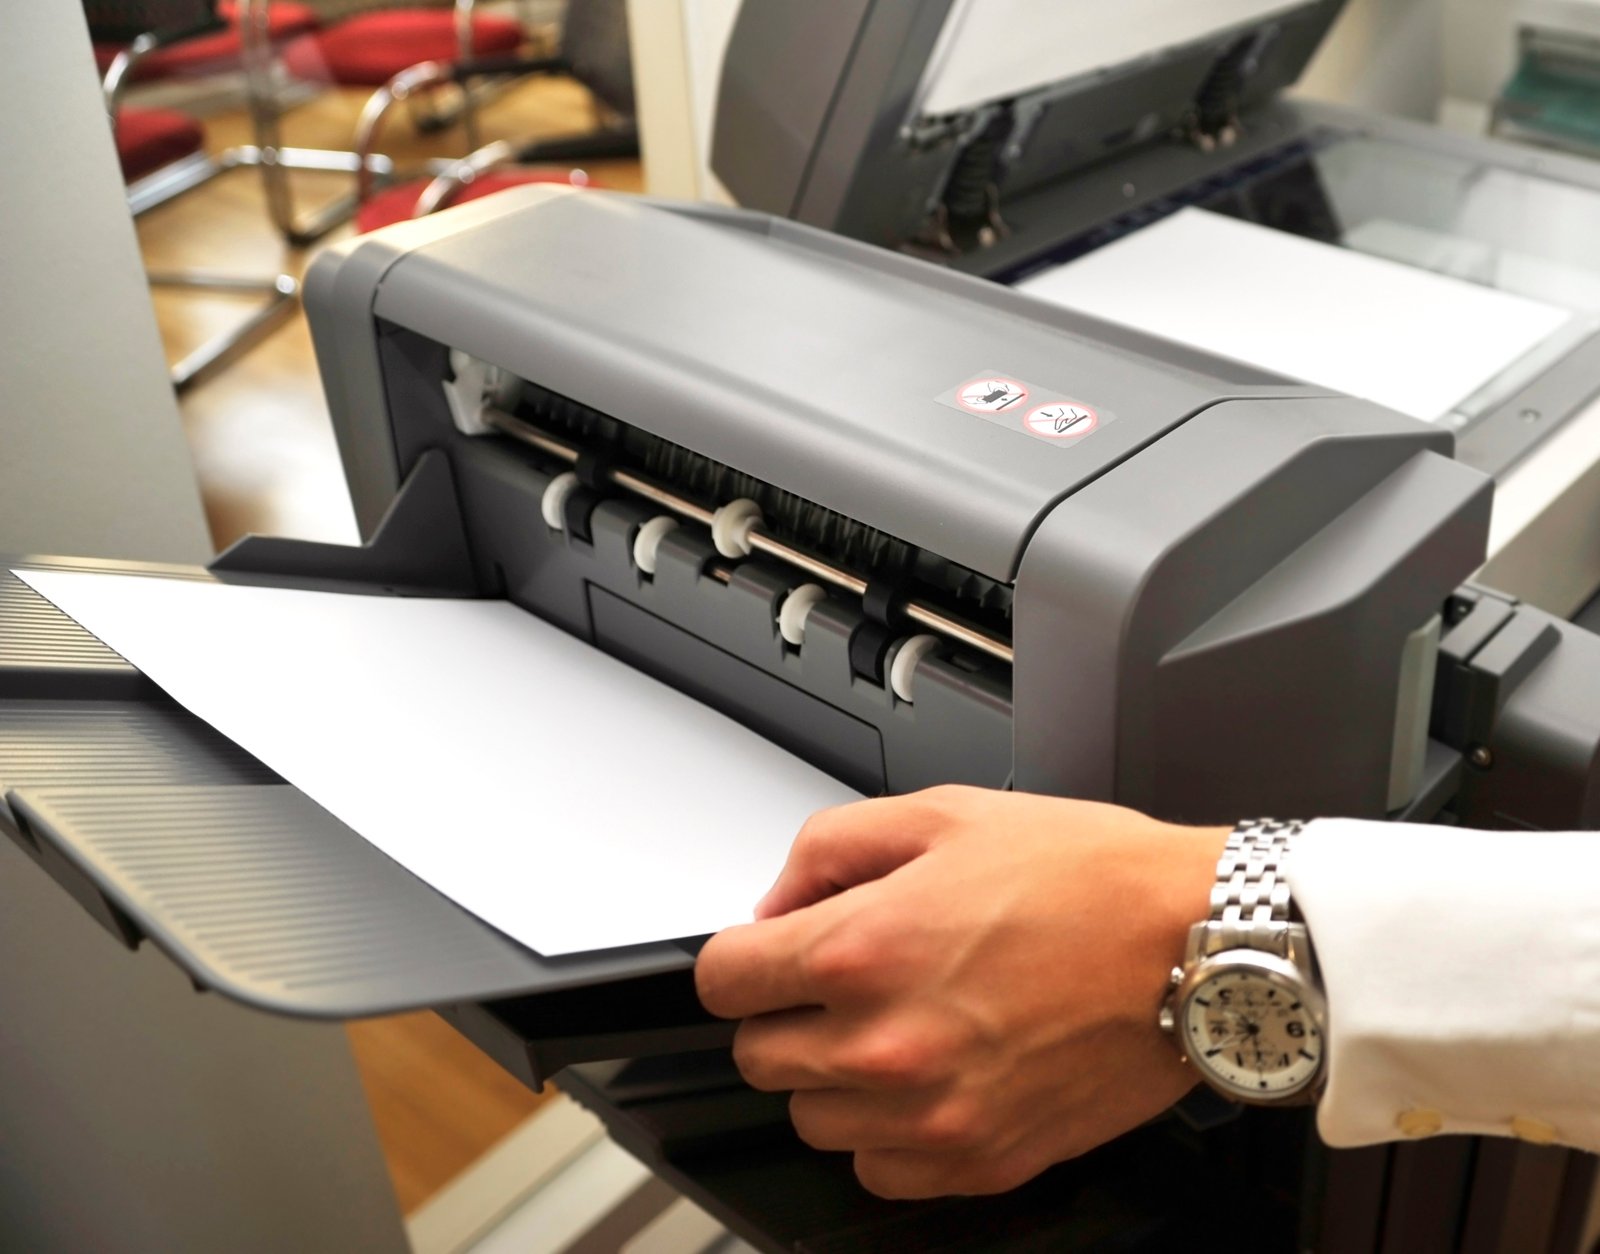 Paper printing